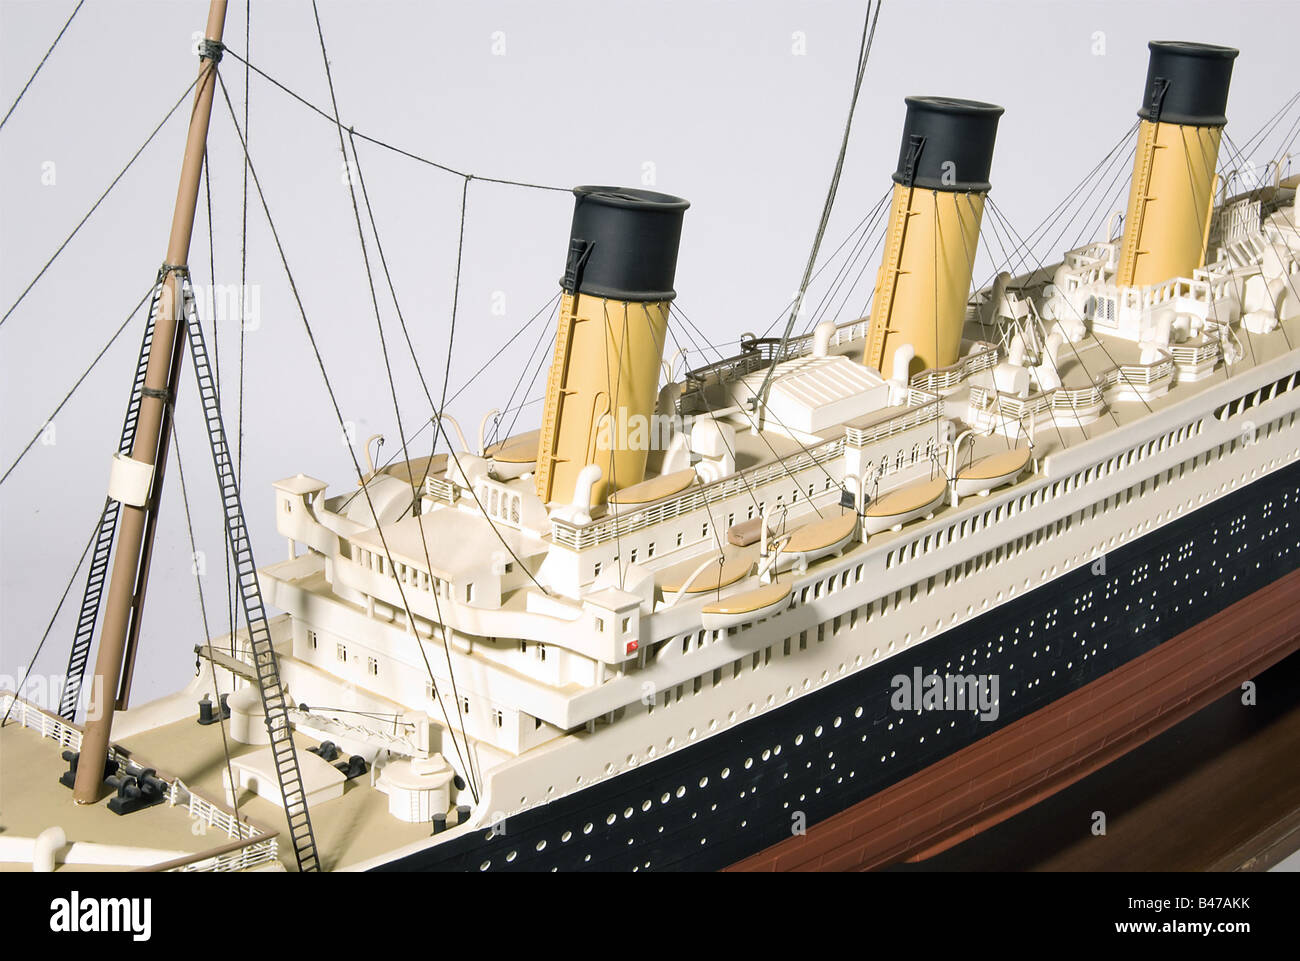 'RMS Titanic', un navire de passagers de la ligne White Star UN modèle en plastique très détaillé et entièrement riglé sur un stand en bois. Longueur env. 185 cm. Largeur 20 cm. Hauteur env. 65 cm. La quille du Titanic a été posée à Harland & Wolff à Belfast en 1909 et le navire a été lancé le 31 mai 1911. Le Titanic, considéré comme insinkable, est devenu célèbre pour sa collision avec un iceberg dans la nuit du 14 au 15 avril et sa perte subséquente avec 1504 des 2208 personnes à bord. Historique, historique, 1900, 1900, XXe siècle, transport, transport, objet, objets, objets, Banque D'Images